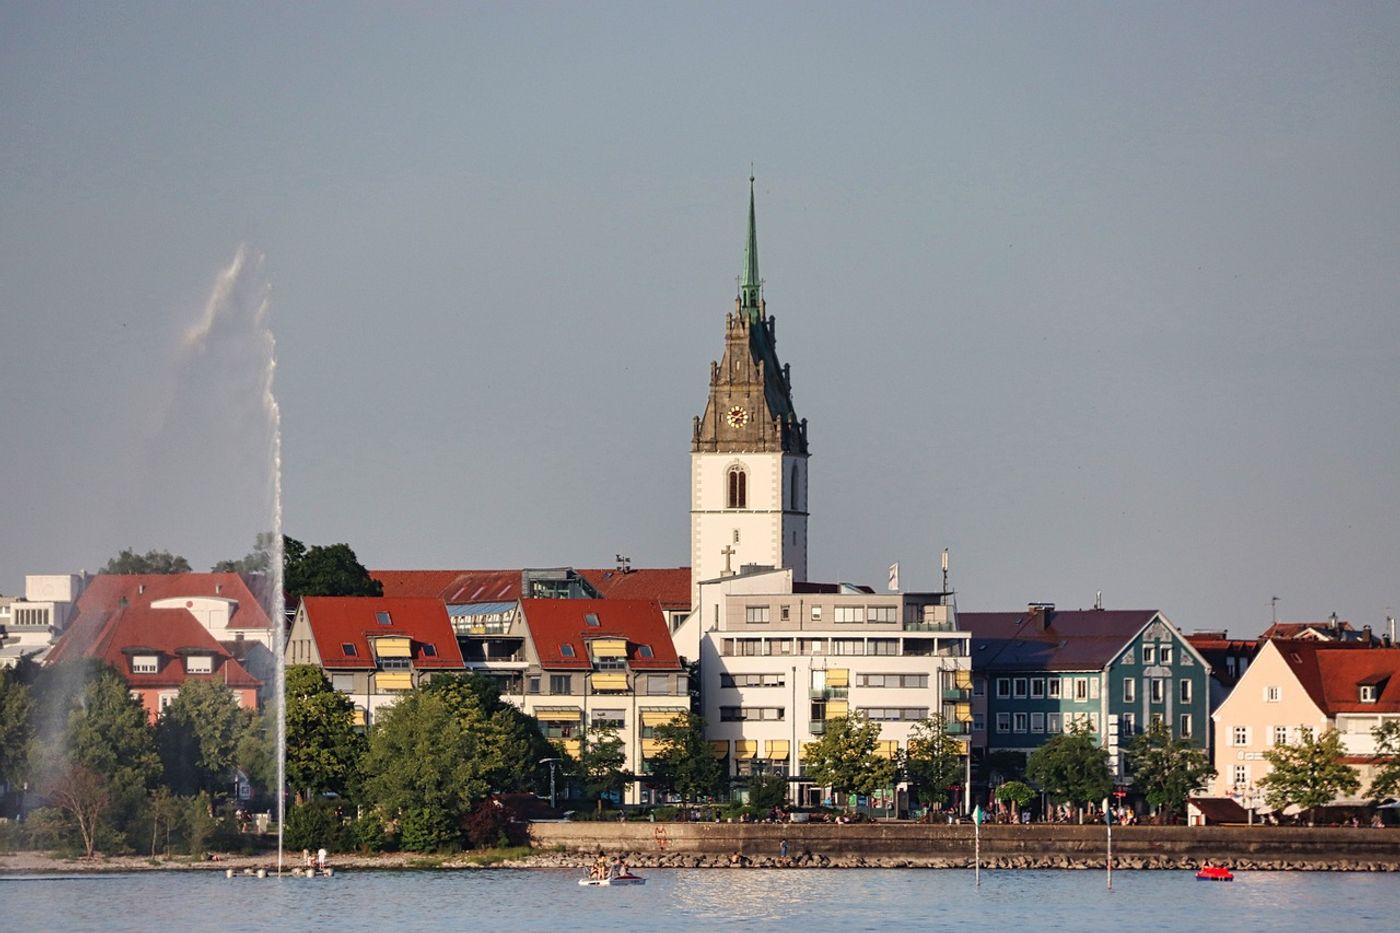 Friedrichshafen: Uniek aan het Bodenmeer